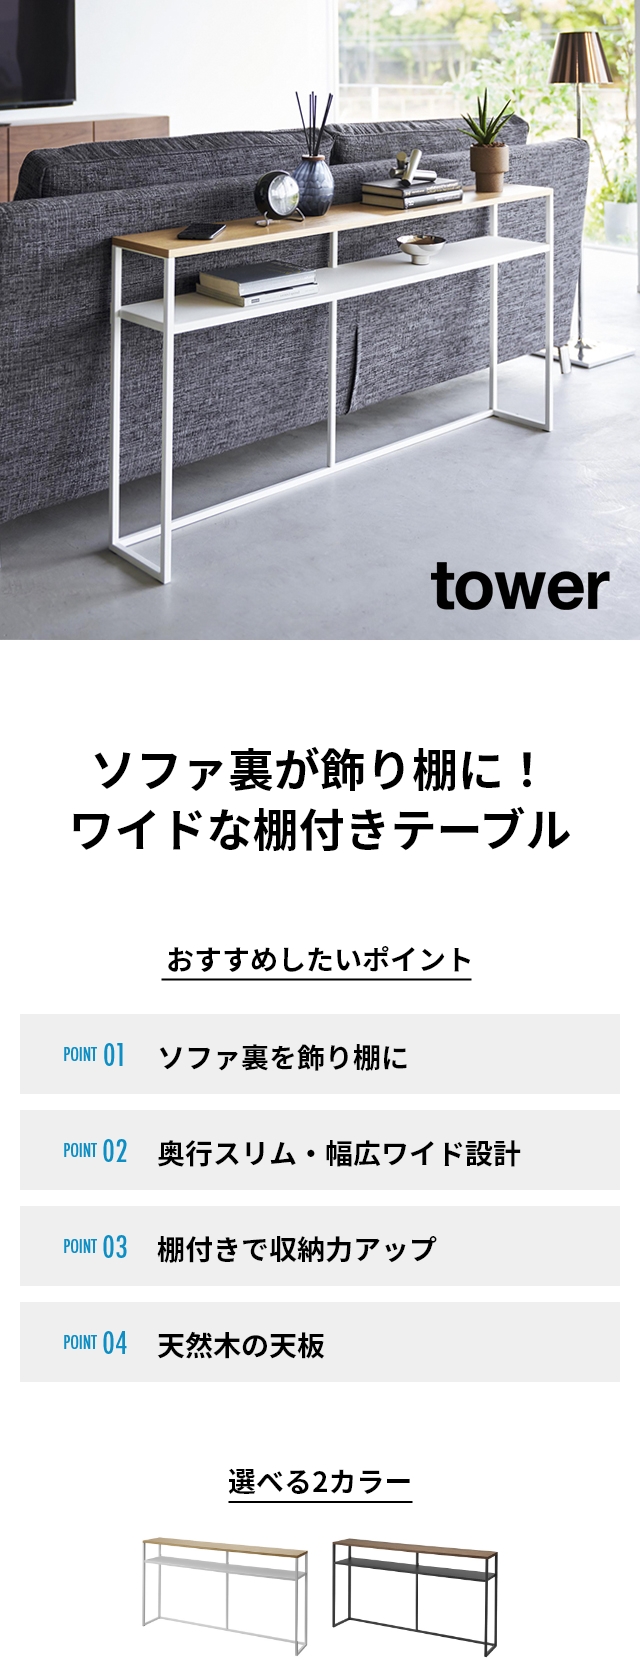 tower 山崎実業 ソファー裏コンソールテーブル タワー 棚付き 送料無料 2028 2029 ホワイト ブラック   スリム 玄関テーブル